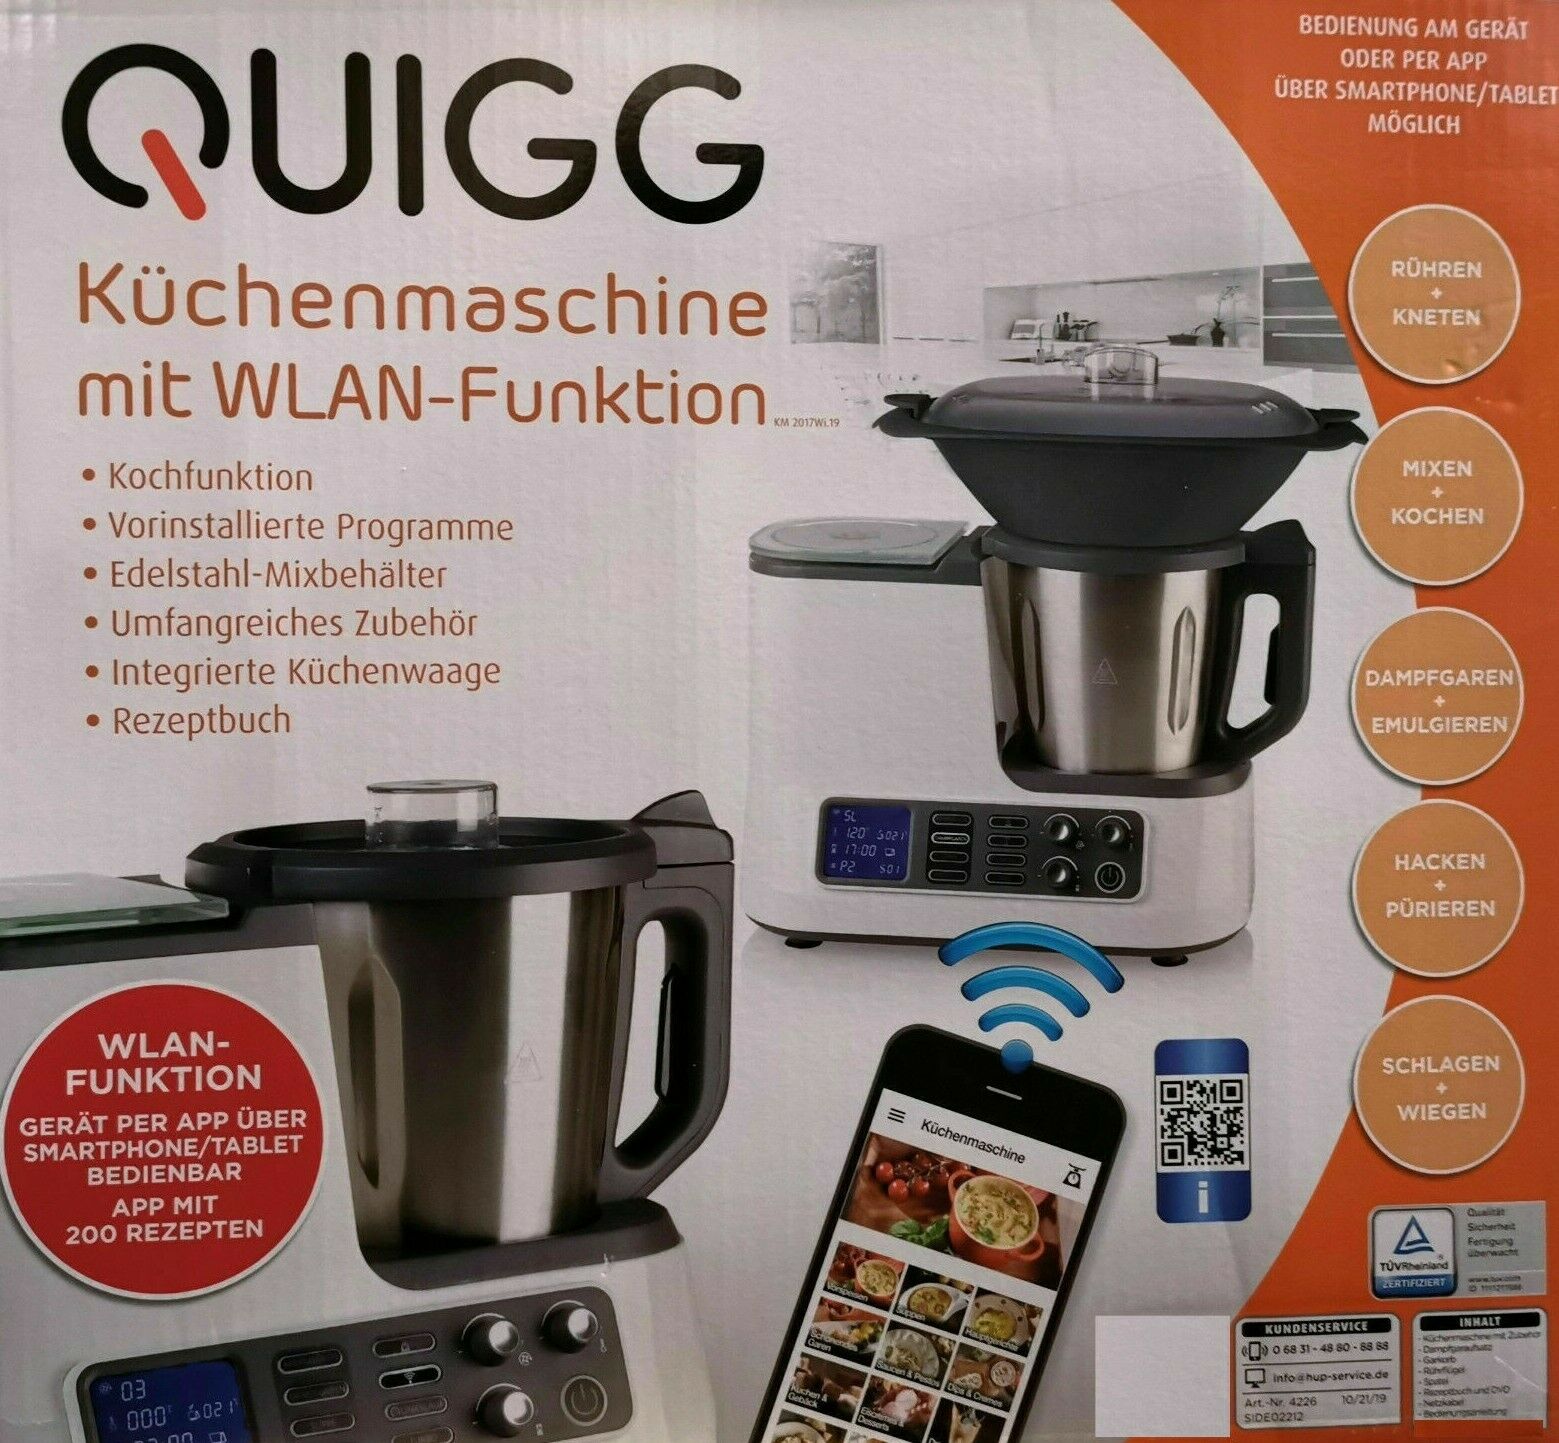 Quigg Küchenmaschine mit WLAN